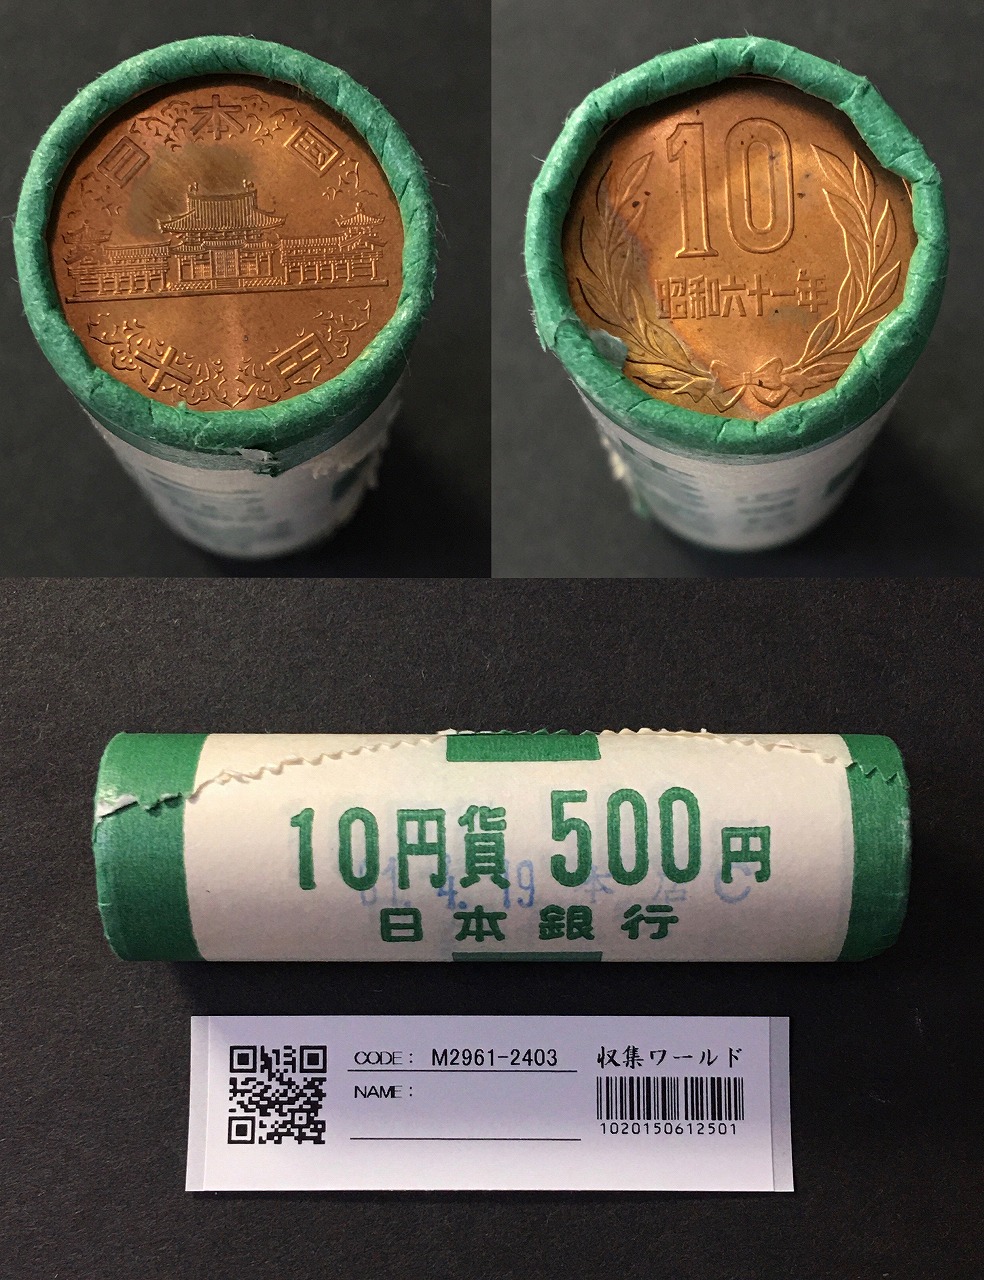 10円青銅貨 S61特年(1986) 希少日本銀行ロール 50枚入り完封品